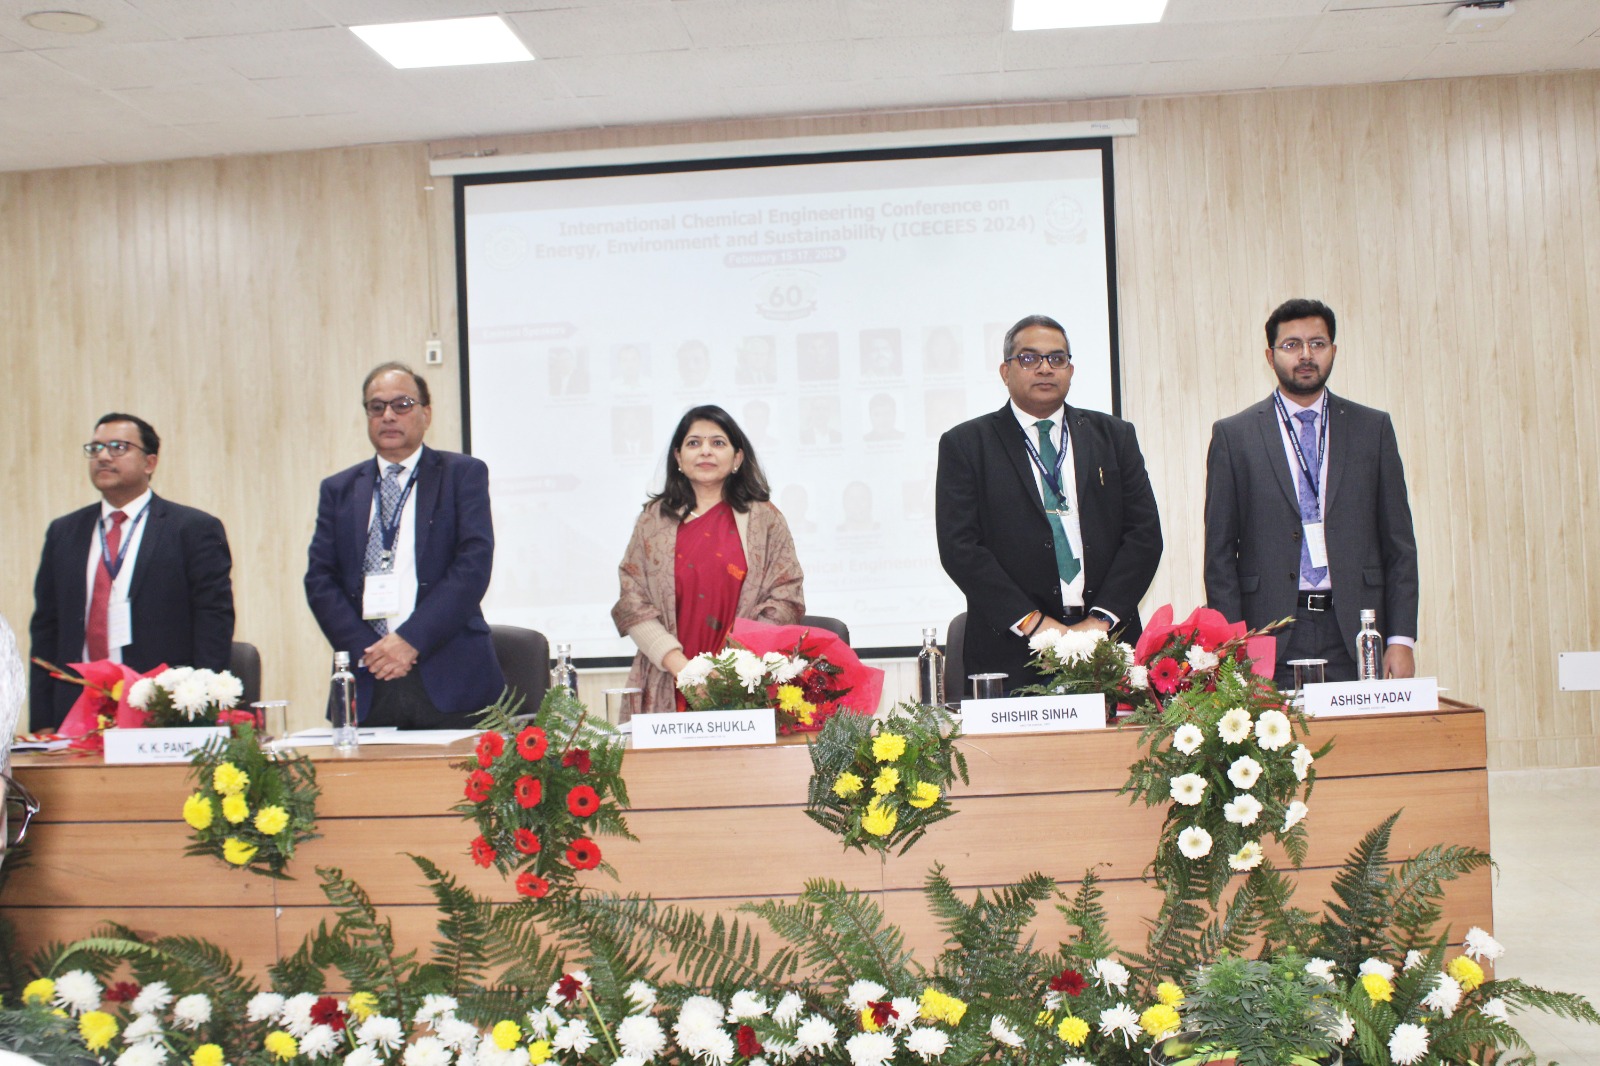 भारतीय प्रौद्योगिकी संस्थान रूड़की ने ऊर्जा, पर्यावरण एवं स्थिरता पर अंतर्राष्ट्रीय रासायनिक अभियांत्रिकी सम्मेलन (आईसीईसीईईएस-2024) का आयोजन किया